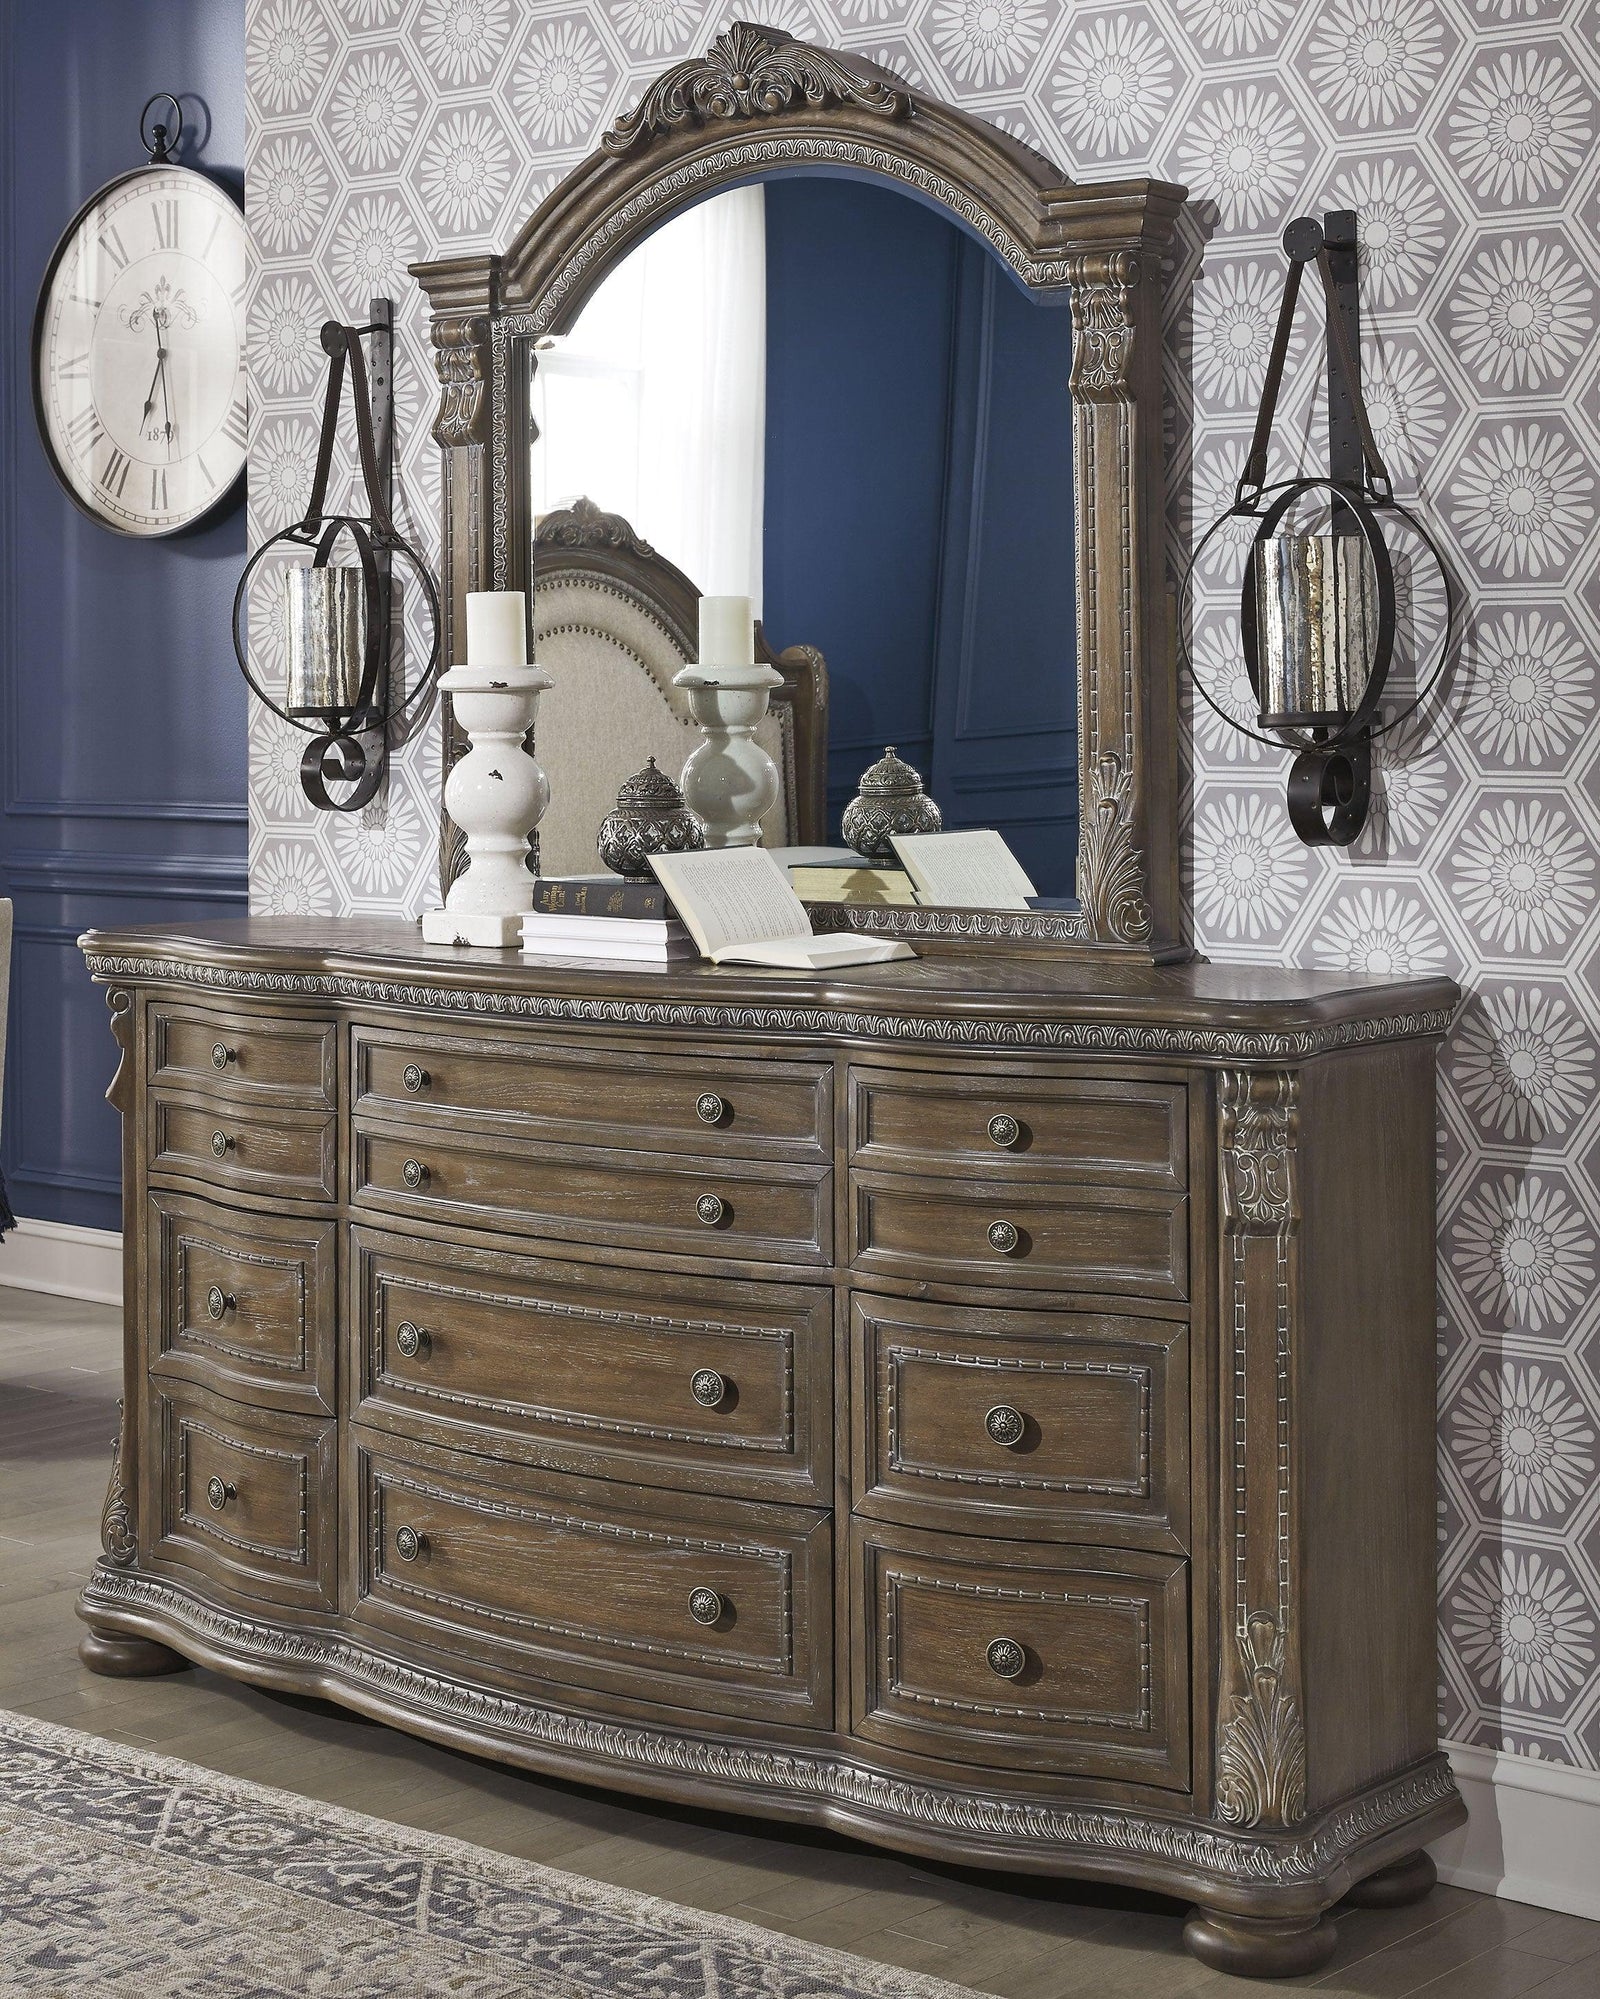 Charmond Brown Dresser And Mirror - Ella Furniture